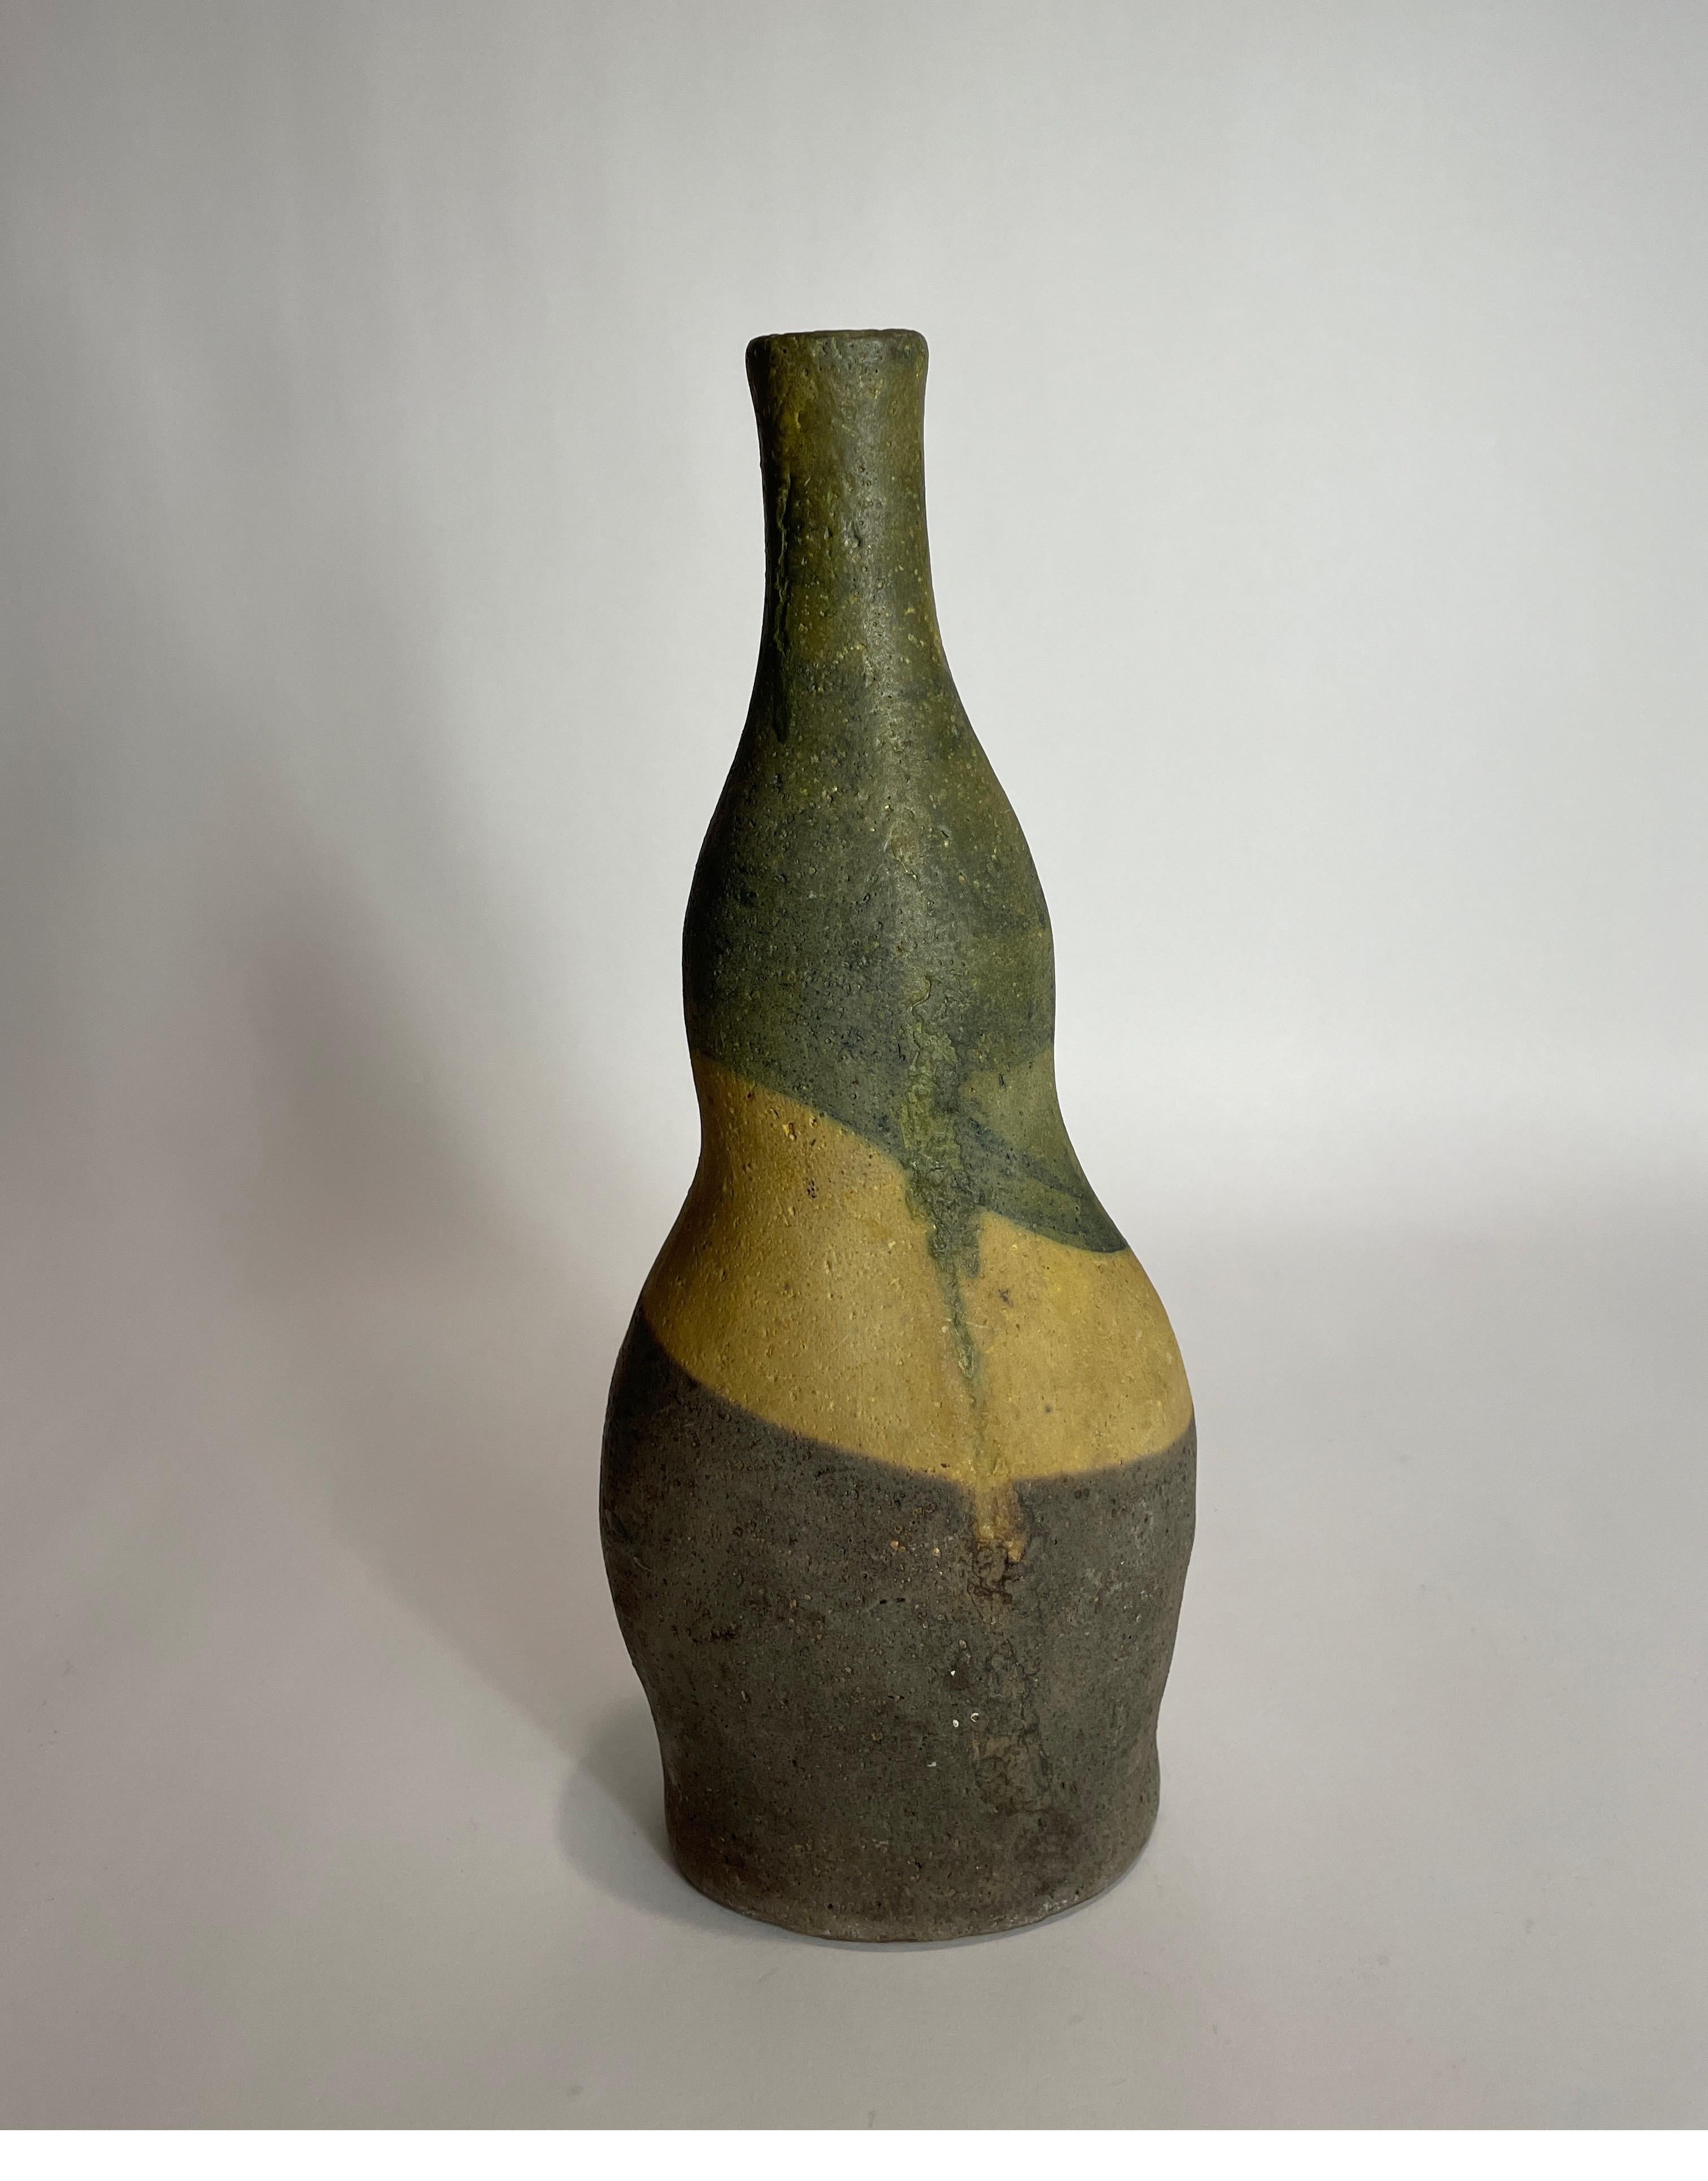 Modern 3 tone Italian vase by Marcelo Fantoni for Raymor.